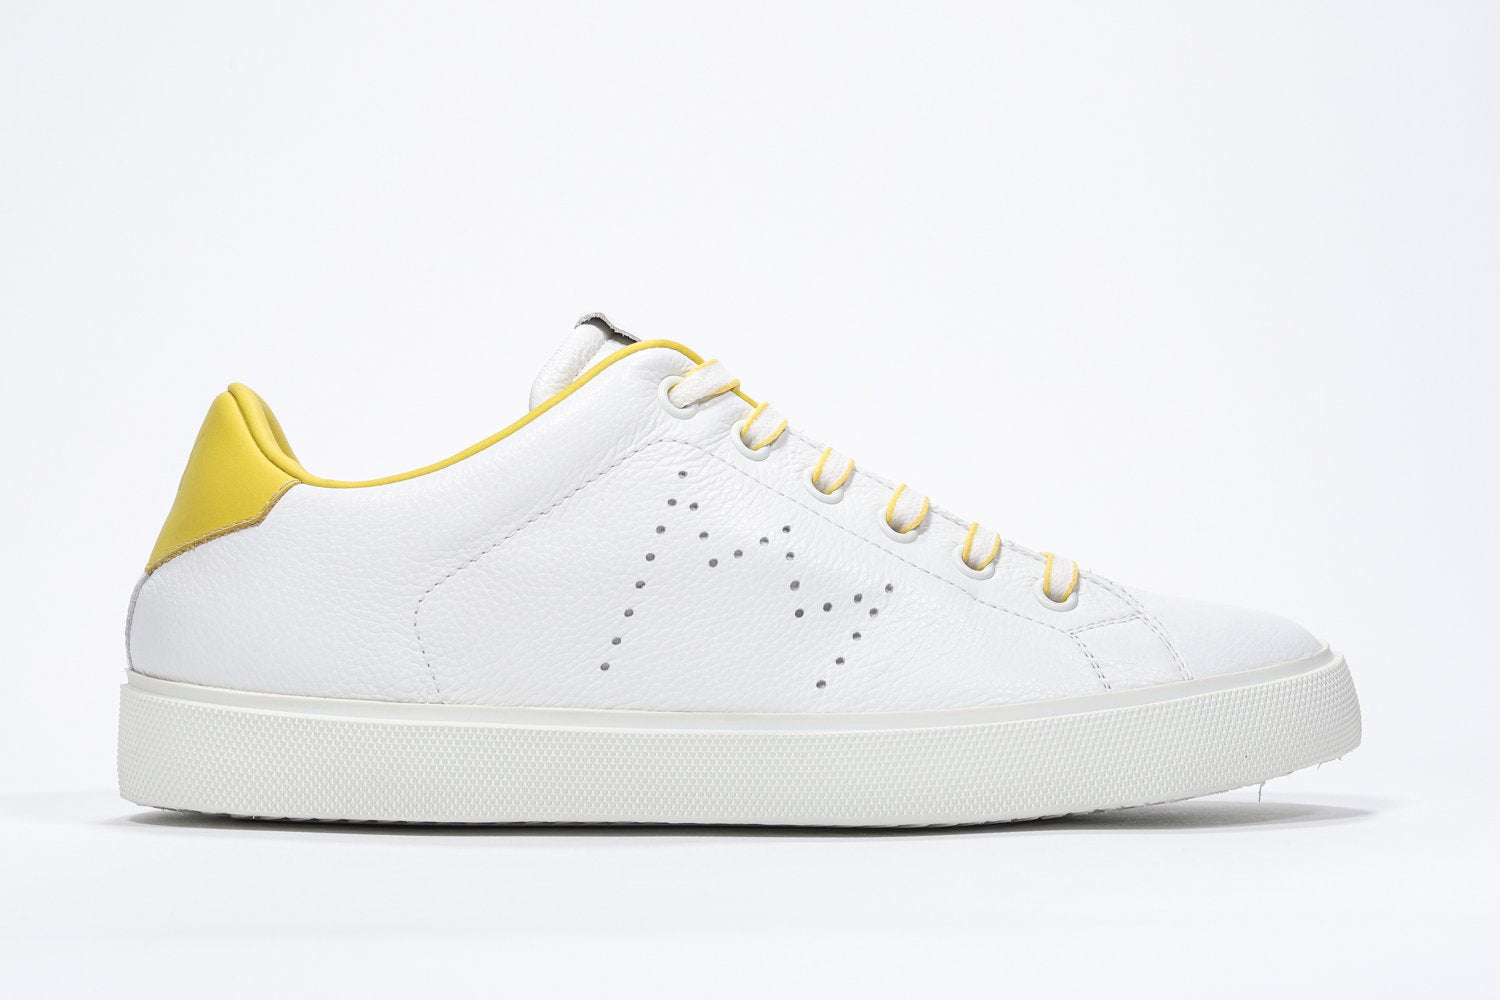 Profil latéral de la chaussure blanche sneaker avec des détails jaunes et le logo perforé de la couronne sur l'empeigne. Tige en cuir et semelle en caoutchouc blanc.